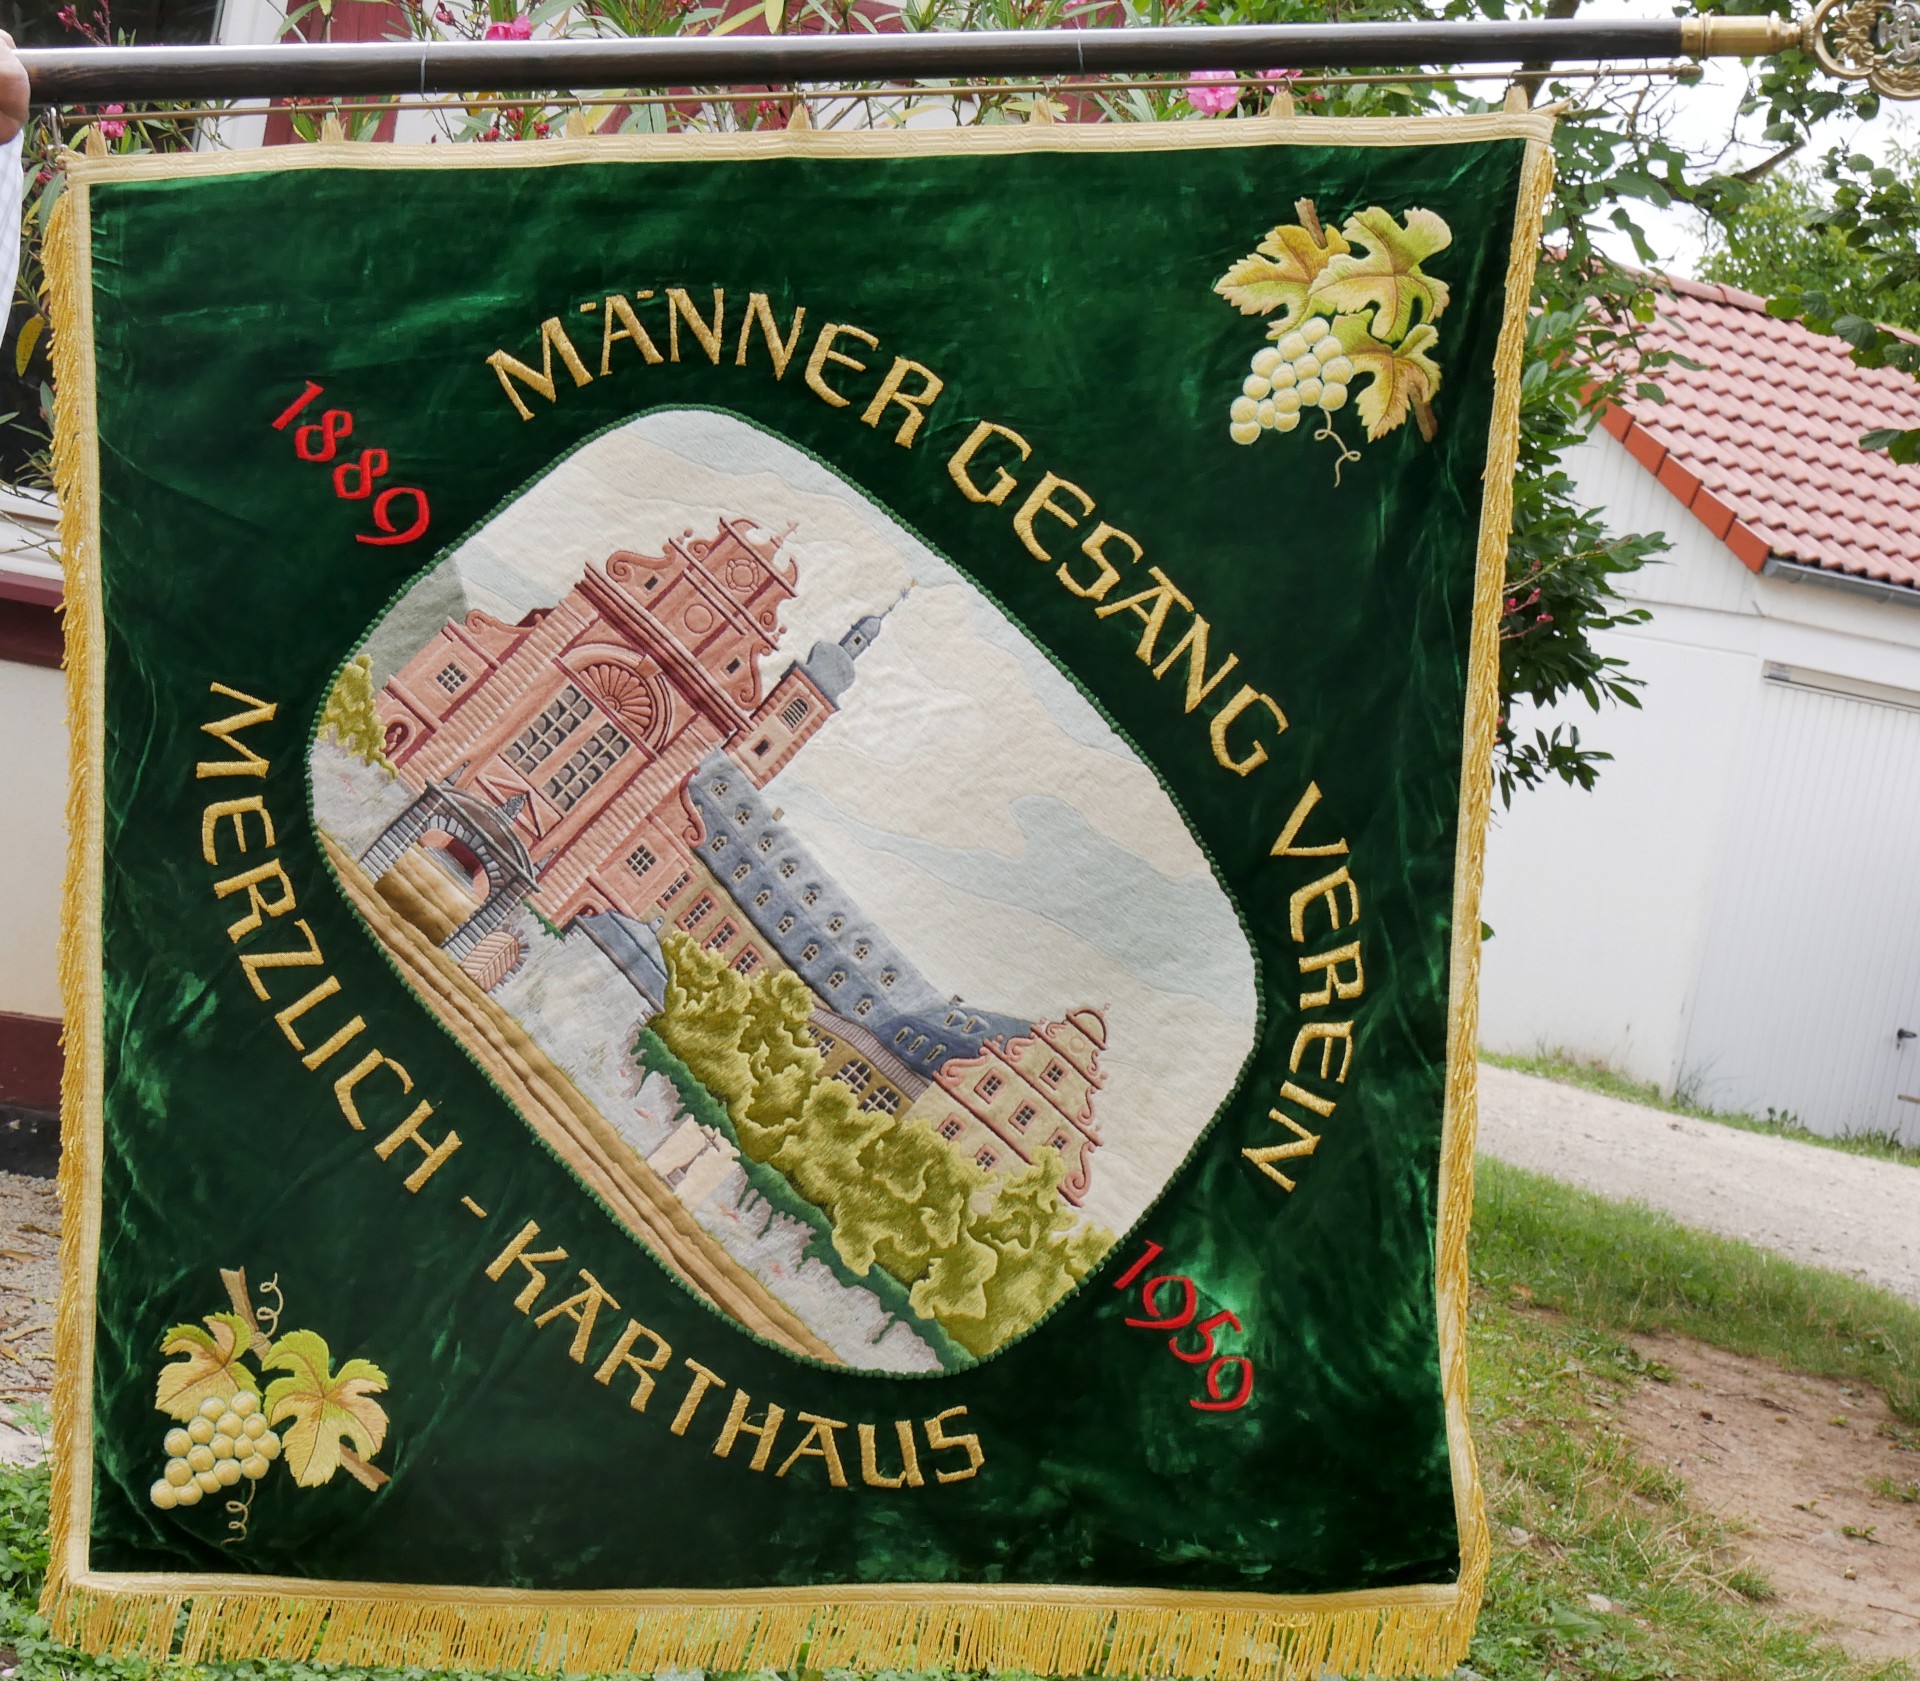 Fahne des Männergesangvereins Konz-Karthaus, 1889 (Volkskunde- und Freilichtmuseum Roscheider Hof CC0)